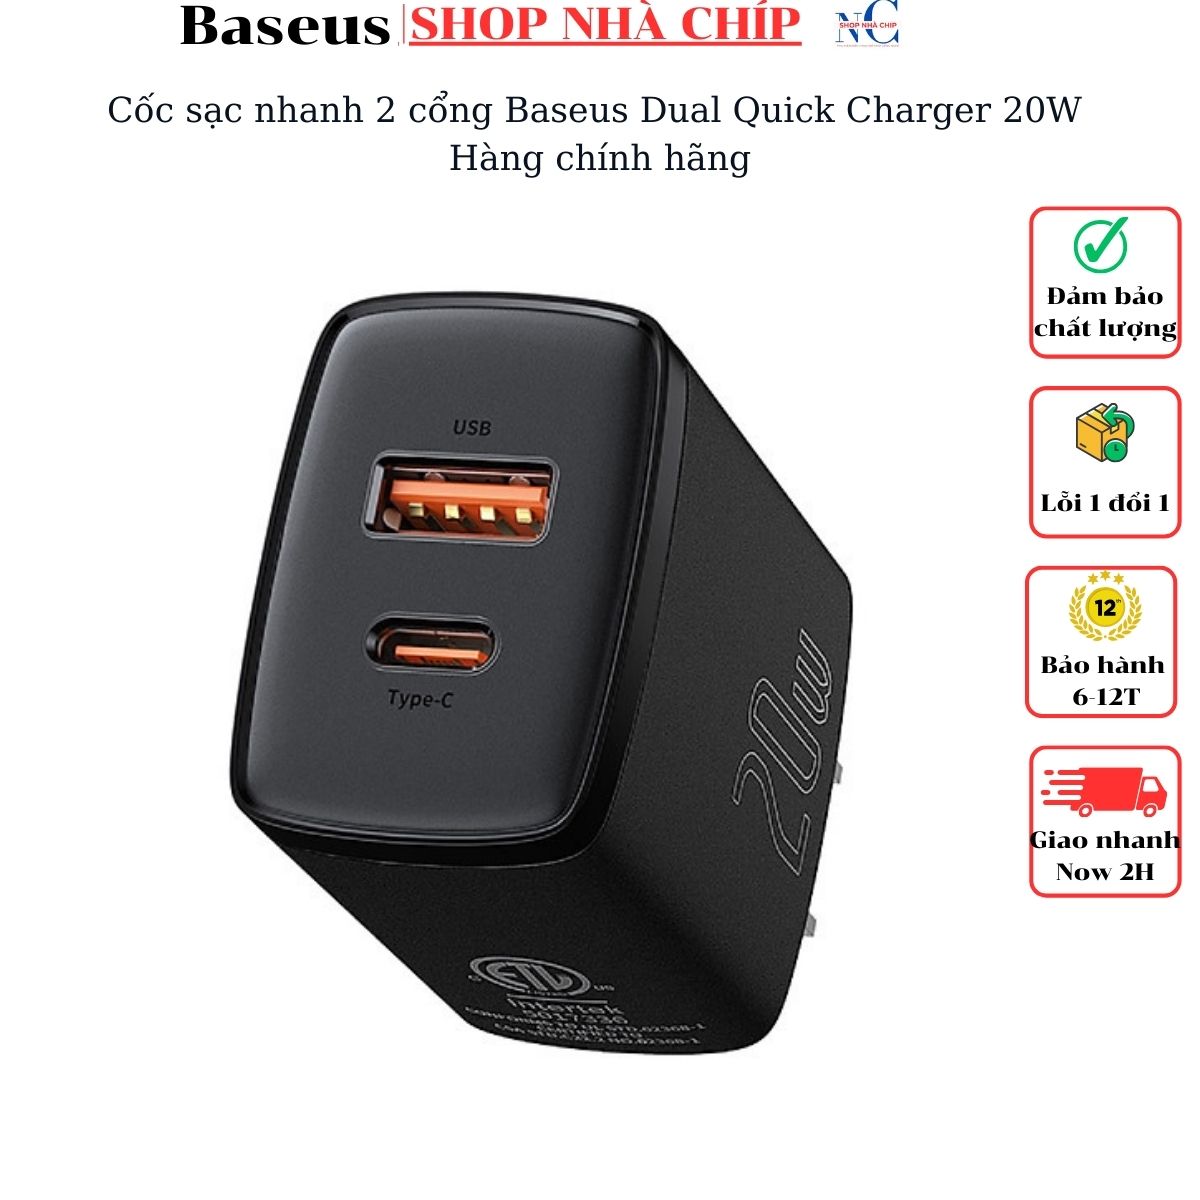 Hình ảnh Cốc sạc nhanh Baseus Dual Quick Charger 20W - Hàng chính hãng